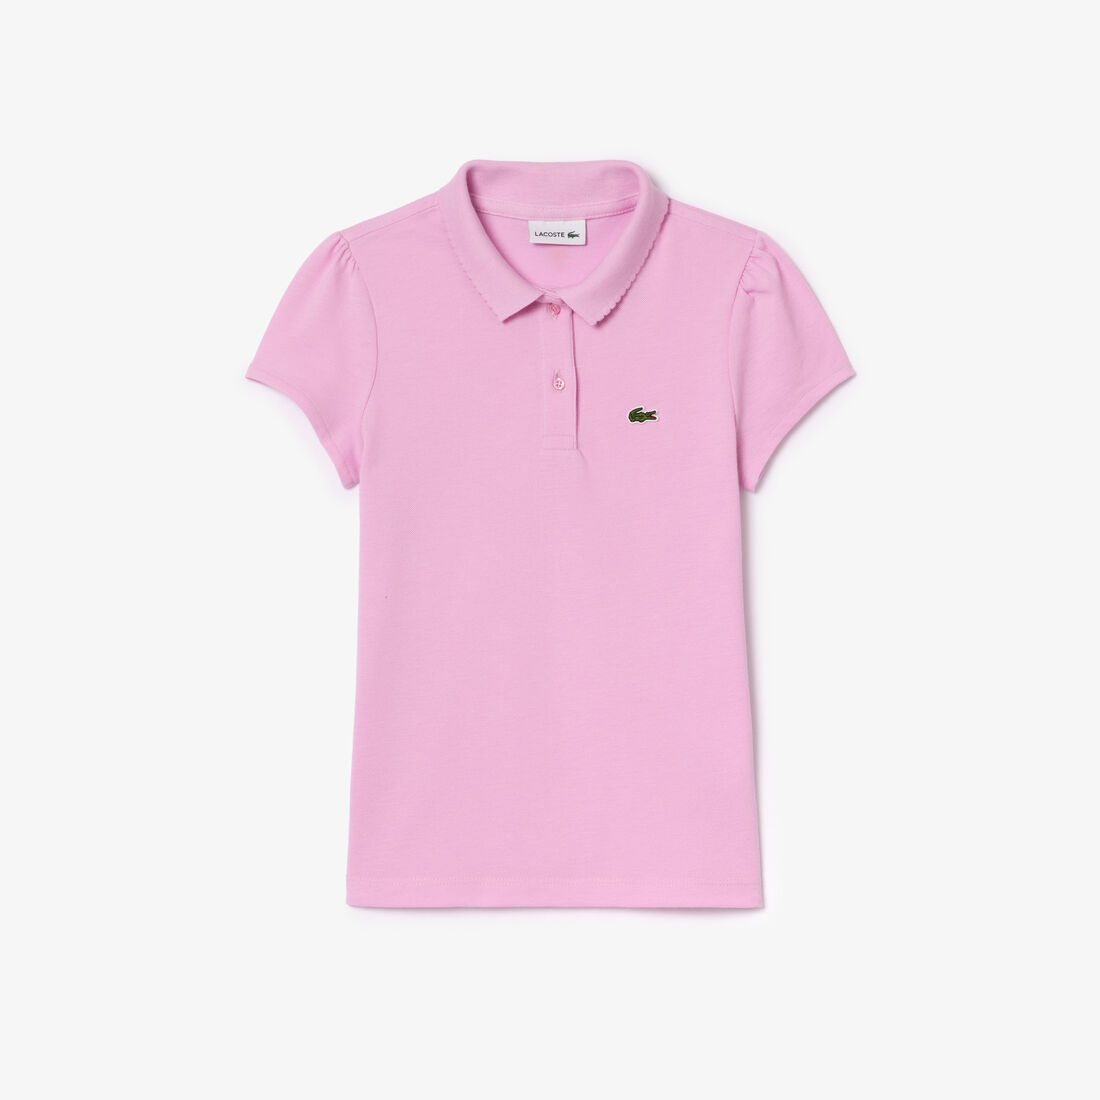 Girls' Lacoste Scalloped Collar Mini Pique Polo Shirt - PJ3594-00-IXV